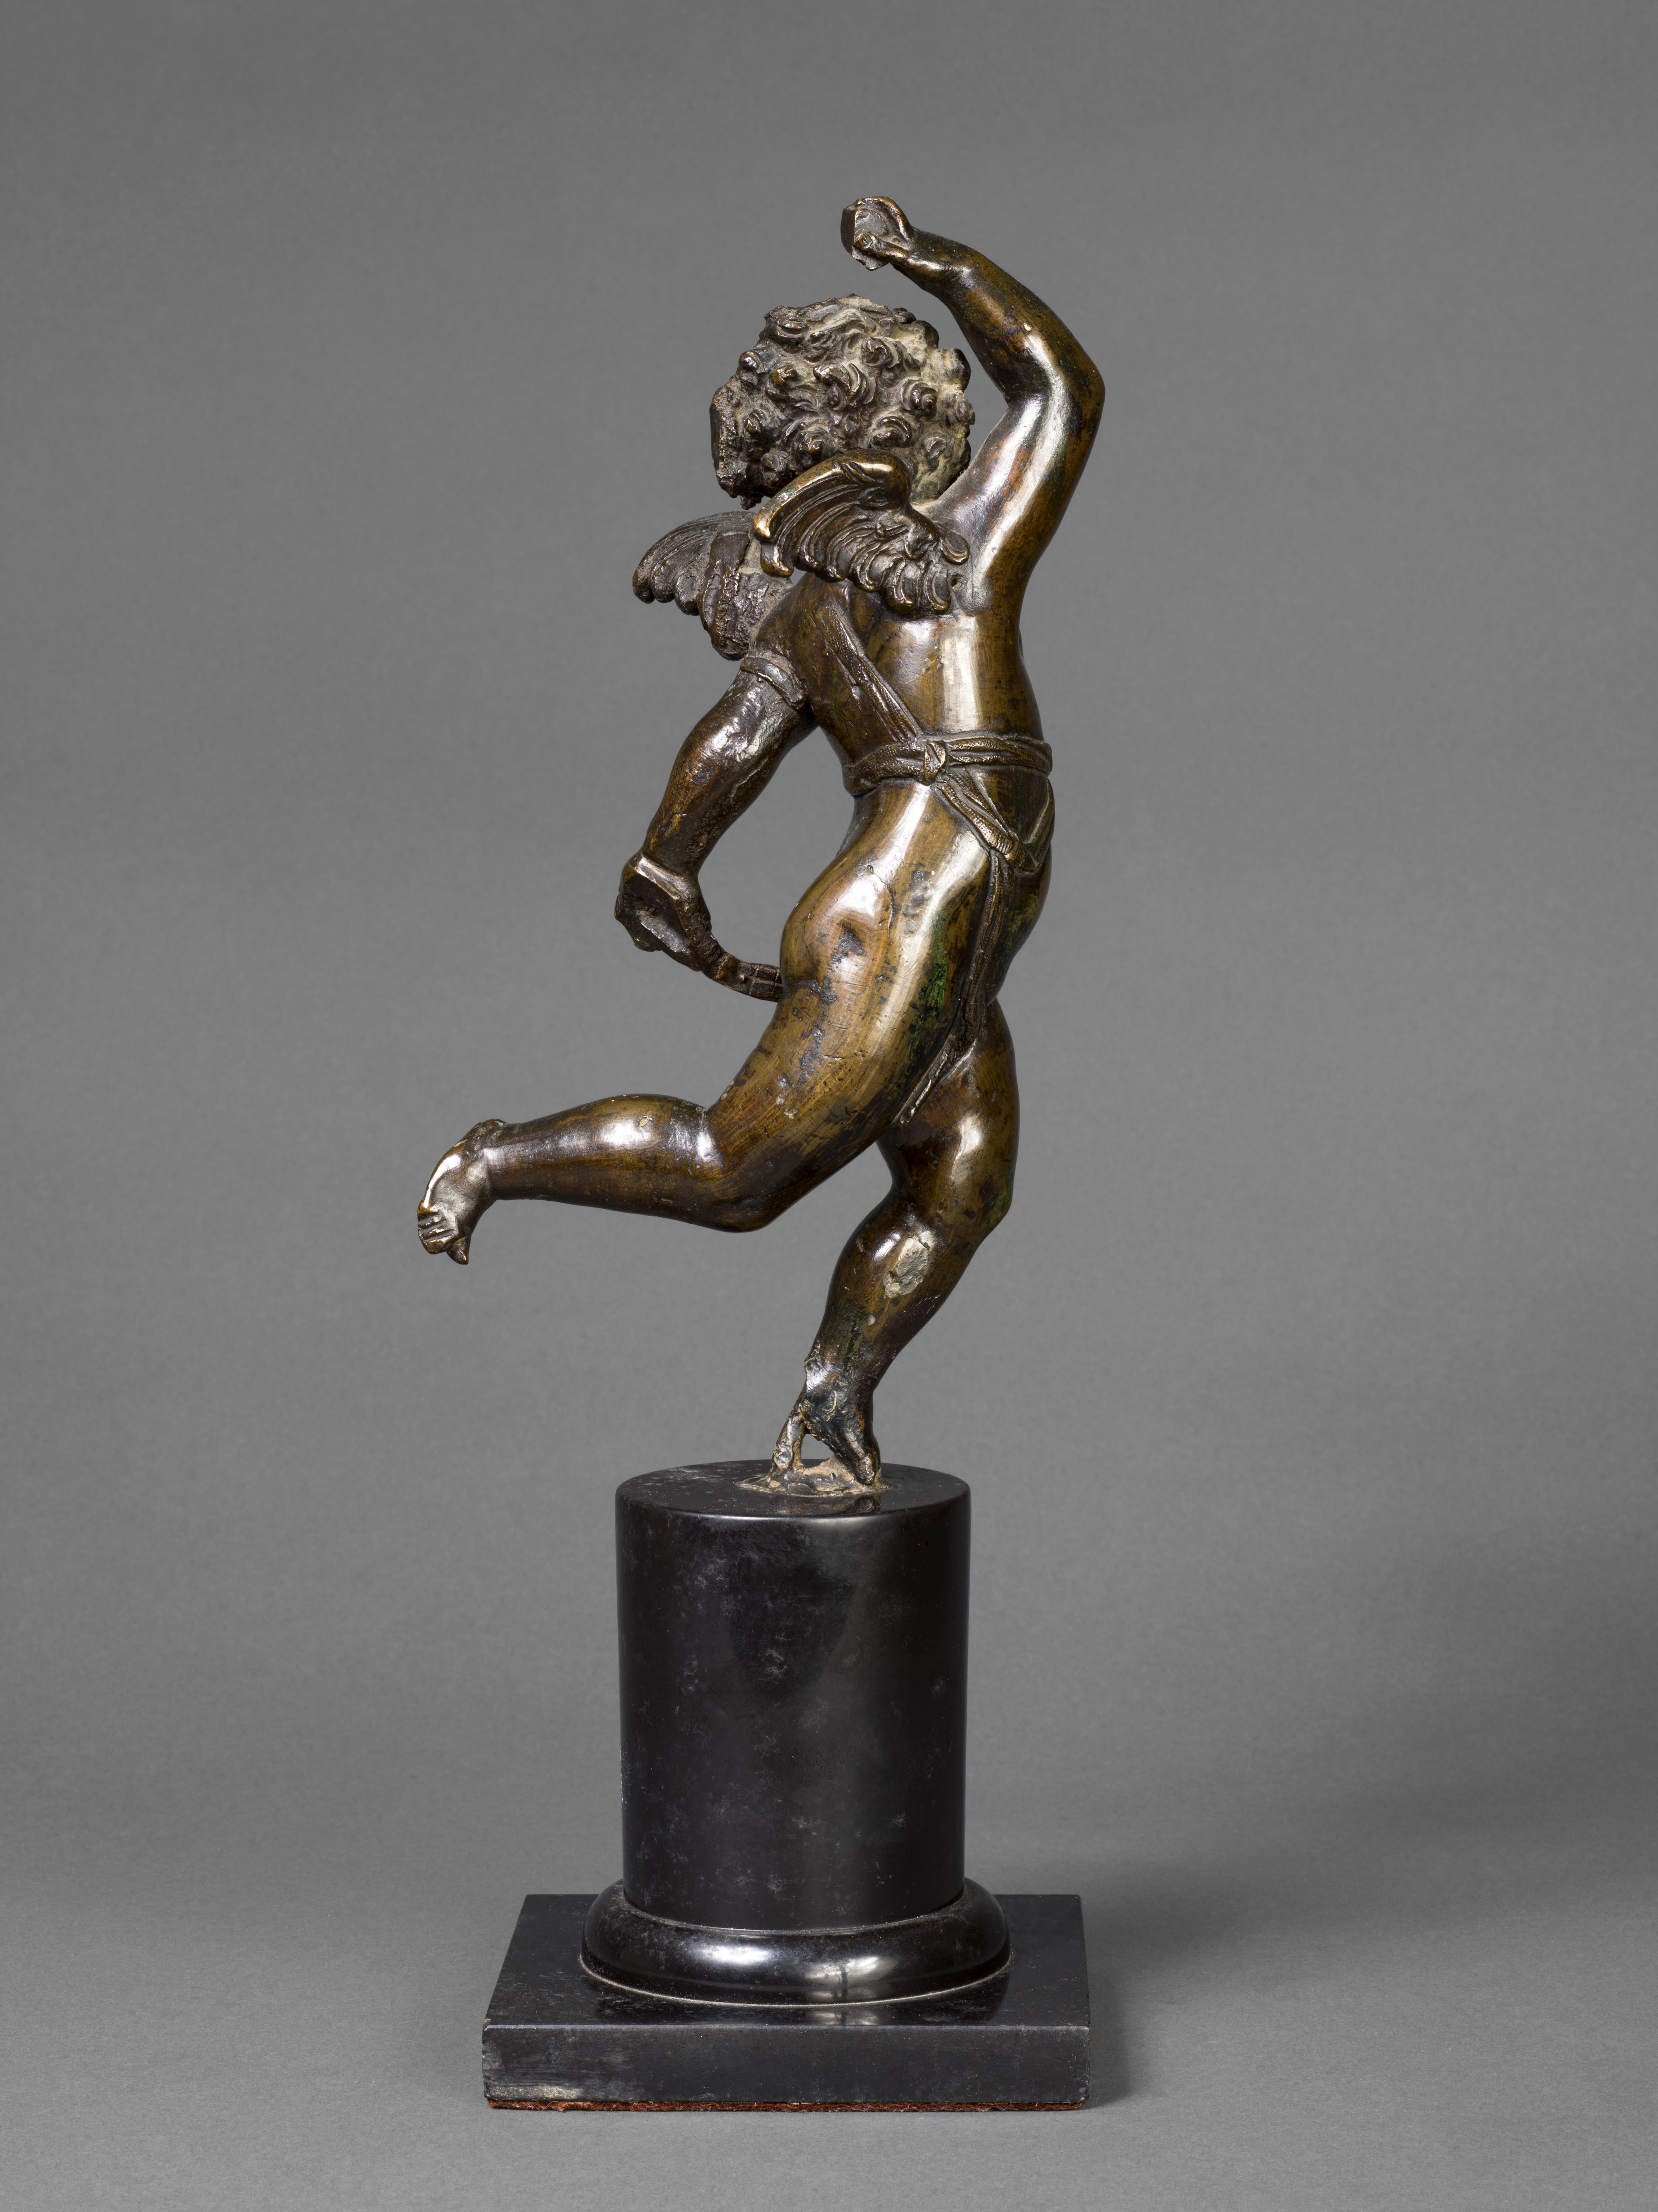 Belle figure en bronze d'un chérubin ailé, également connu sous le nom de putto.